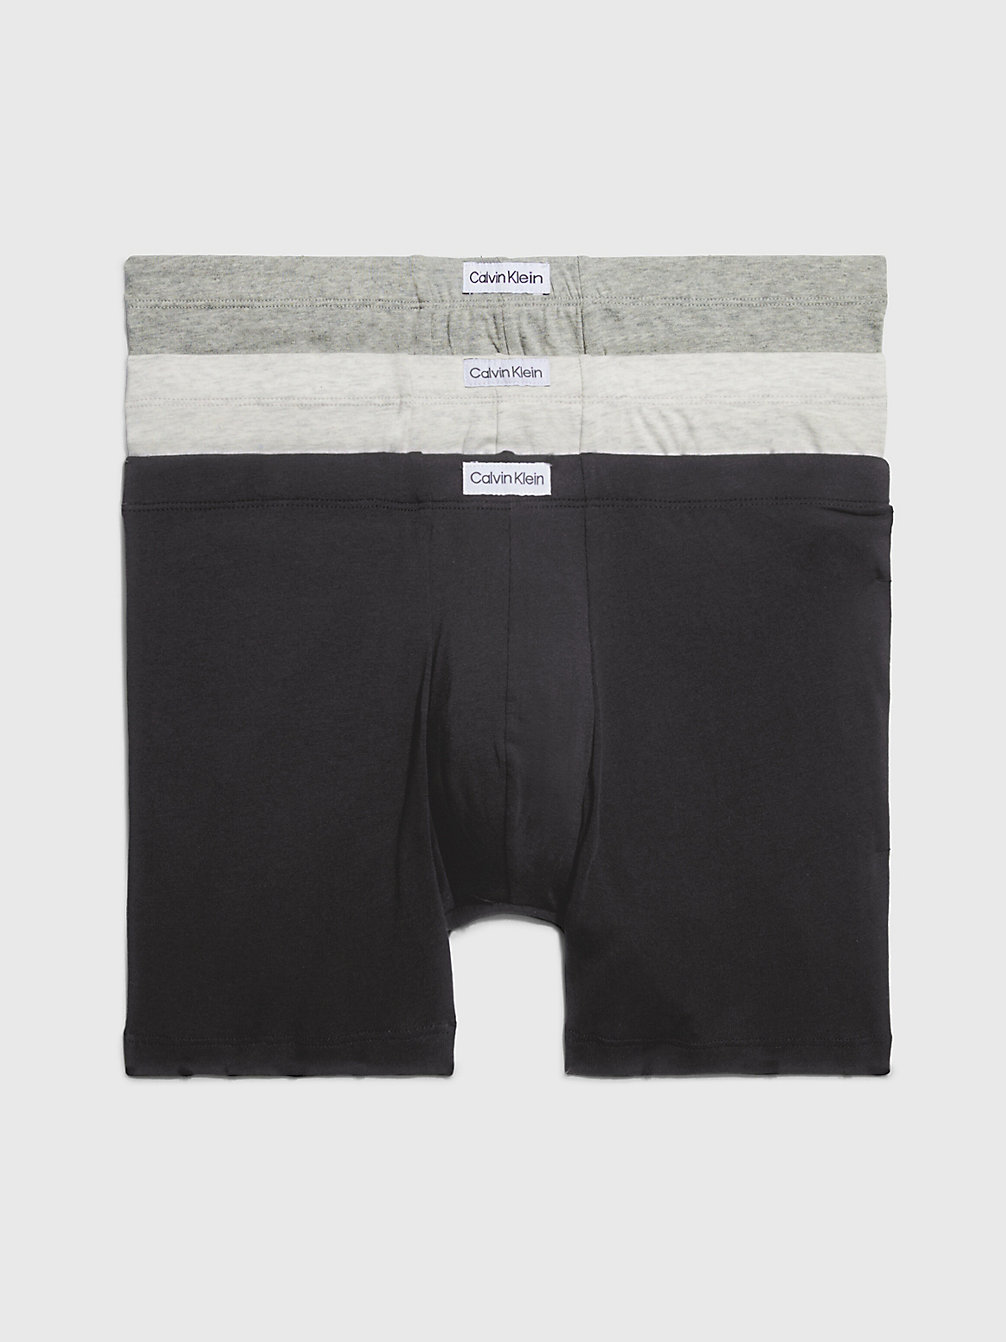 GREY HEATHER/ BLACK/ SNOW HEATHER 3 Pack Boxershorts - Pure Cotton undefined Herren Calvin Klein